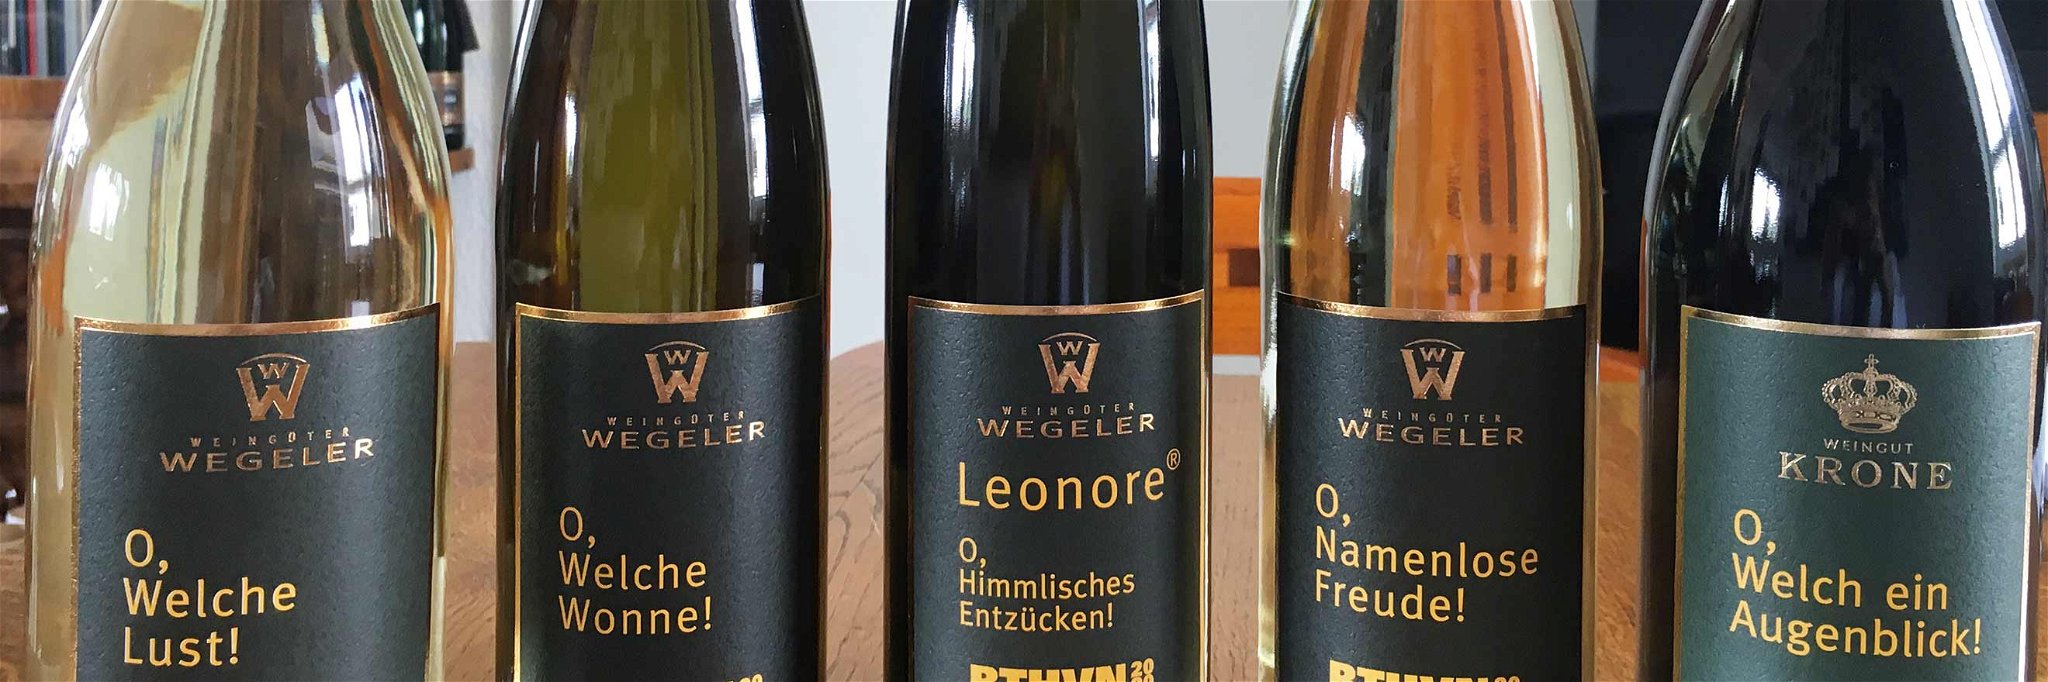 Die Beethoven-Kollektion der Weingüter Wegeler